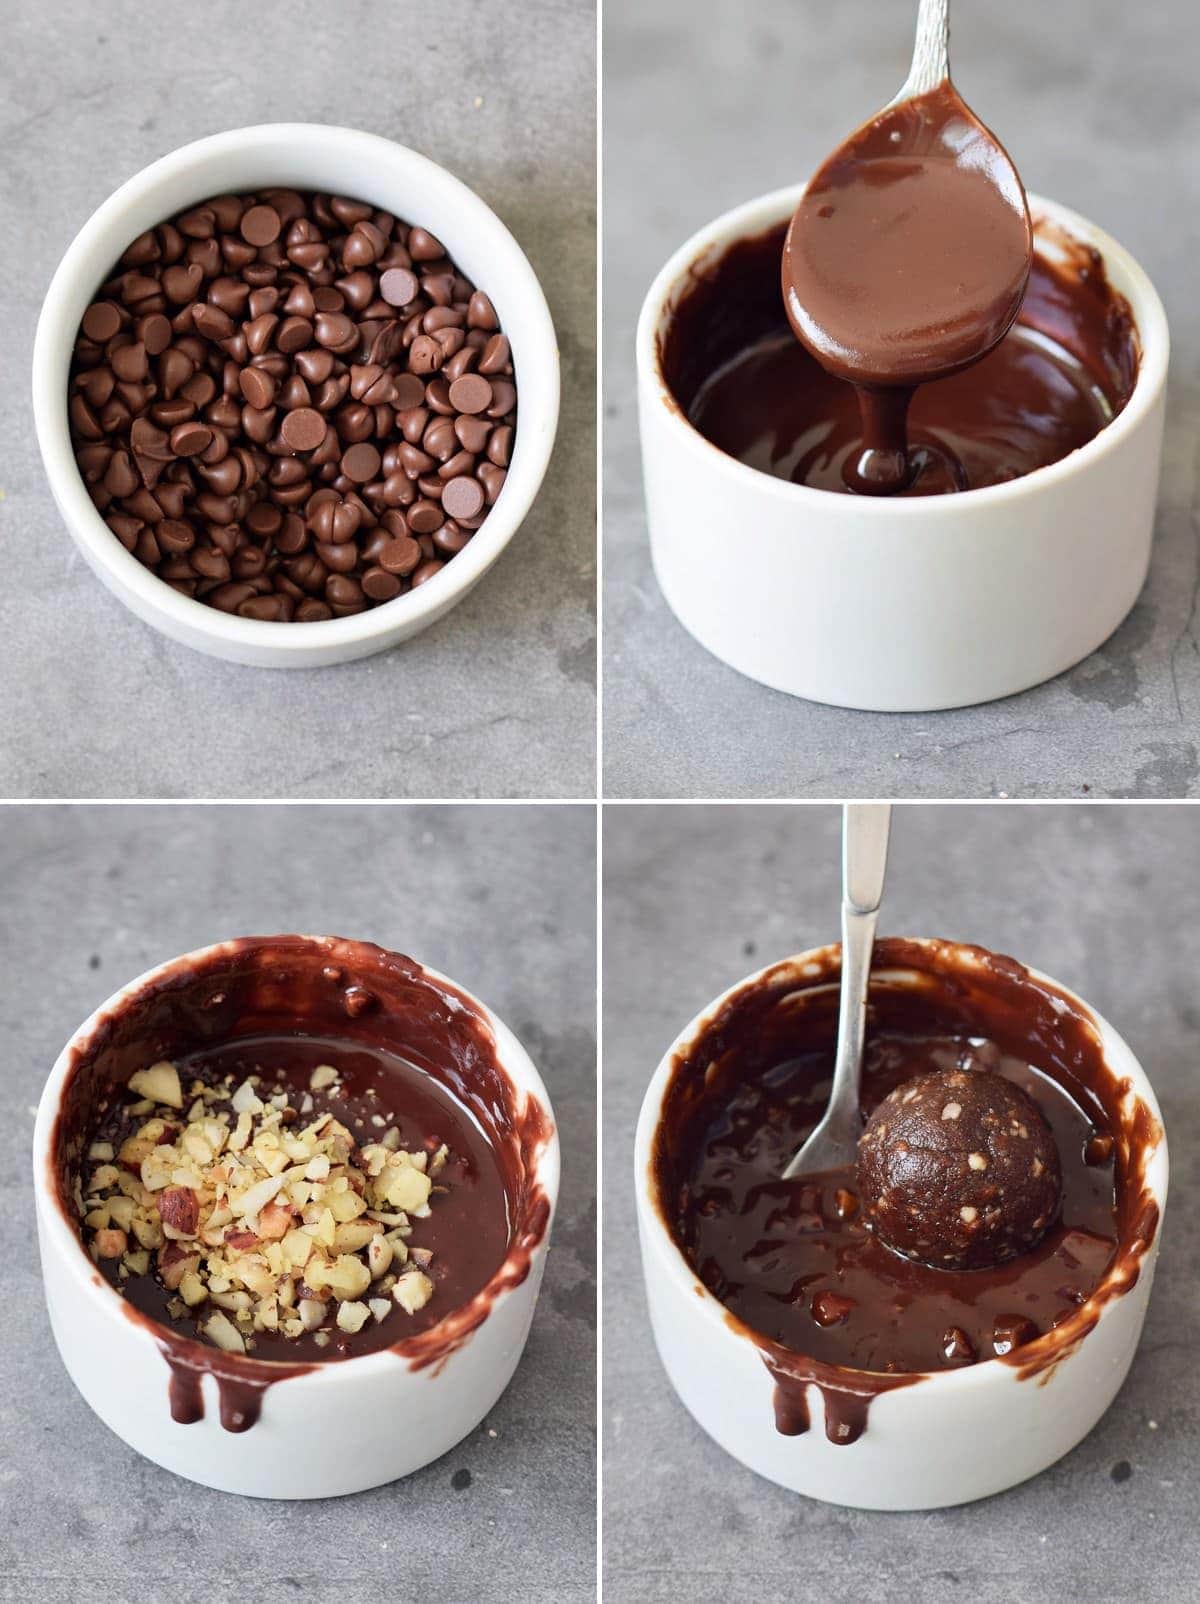 4 Schritt-für-Schritt-Fotos vom Schmelzen veganer Schokolade und dem Dippen von Haselnuss-Trüffel darin